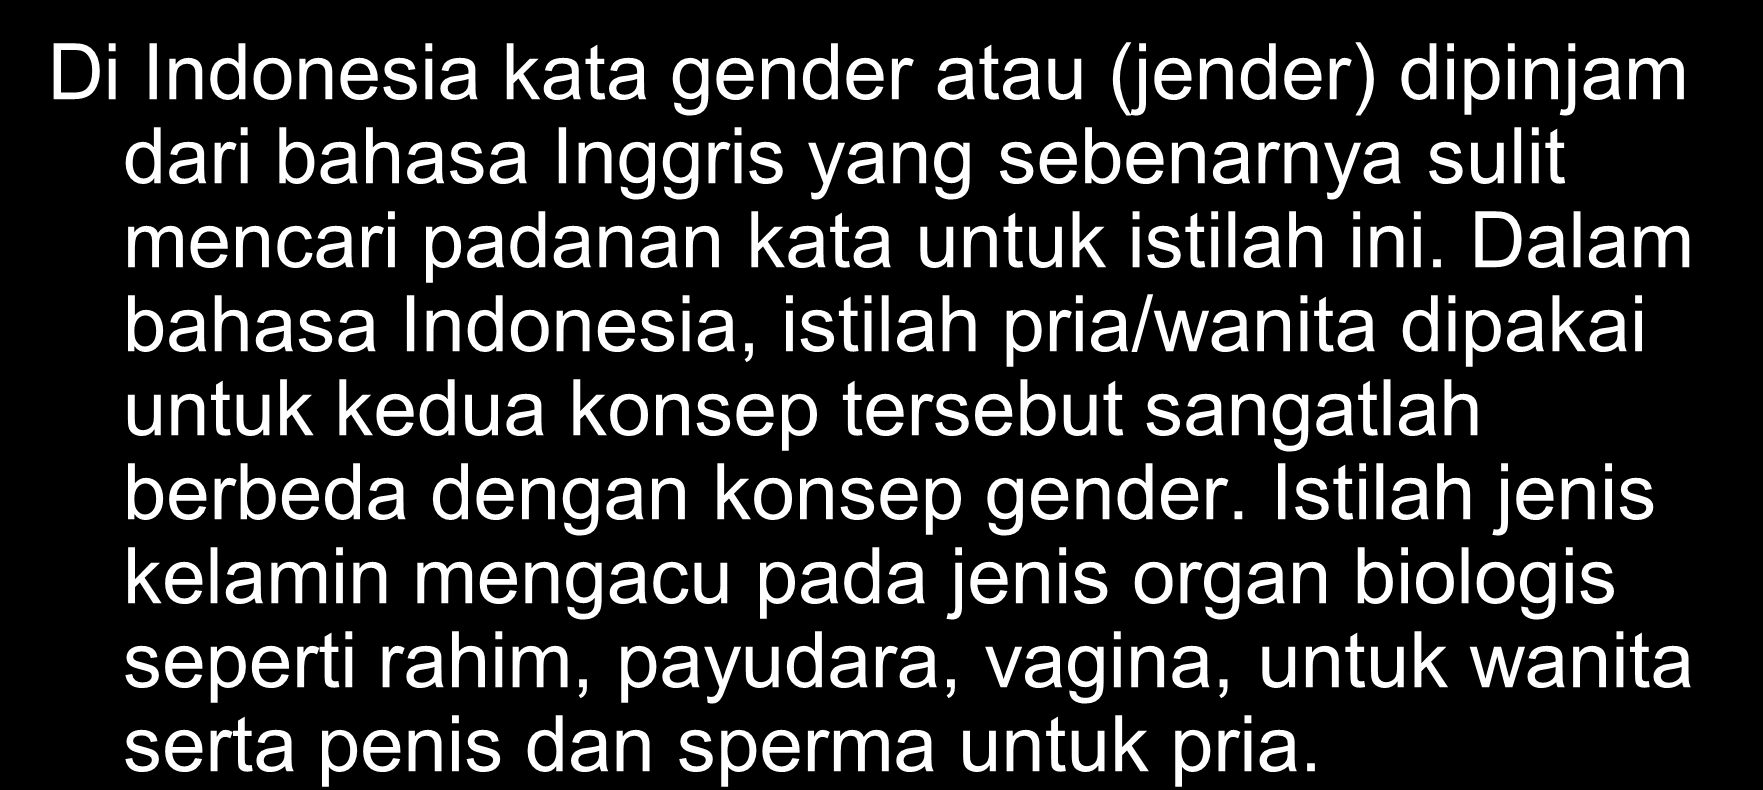 1. Konsep Gender Di Indonesia kata gender atau (jender) dipinjam dari bahasa Inggris yang sebenarnya sulit mencari padanan kata untuk istilah ini.